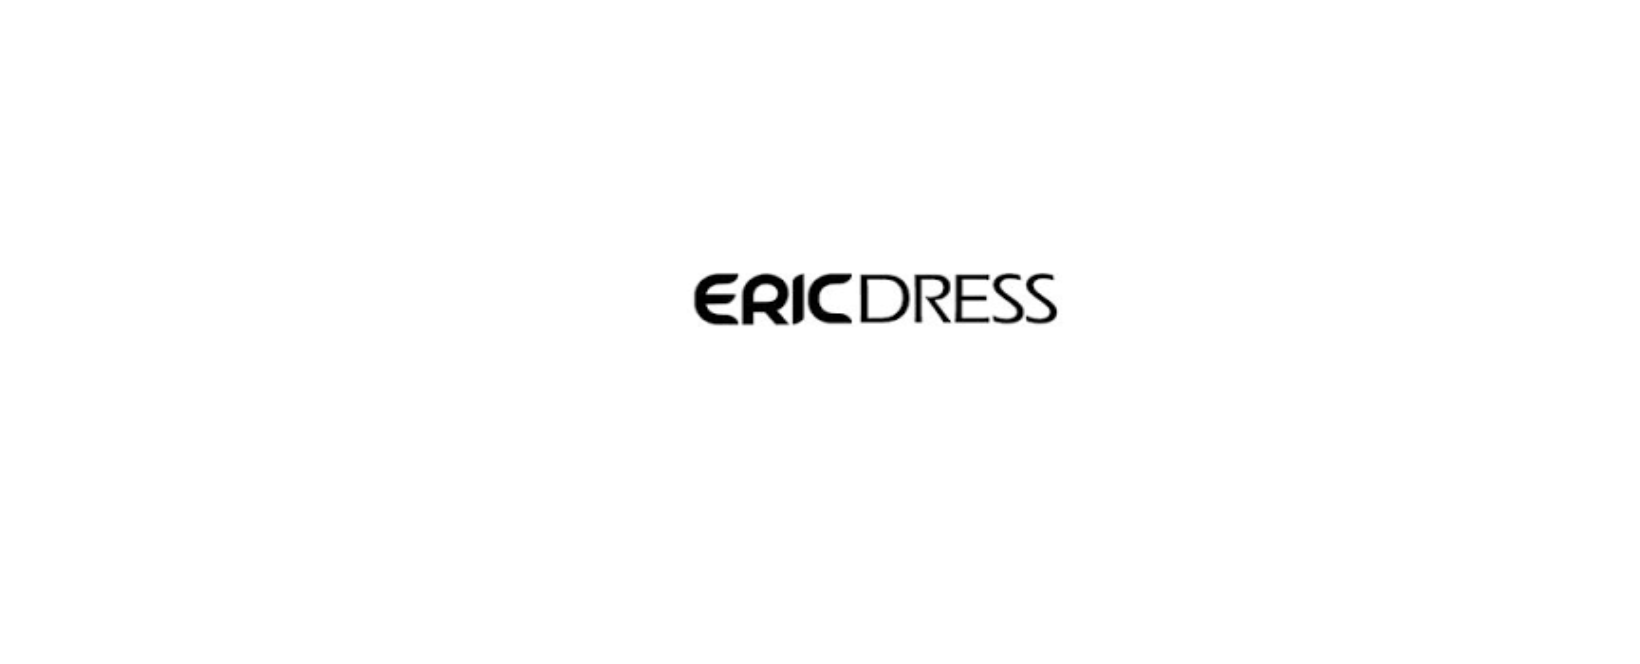 Ericdress Discount Code 2022